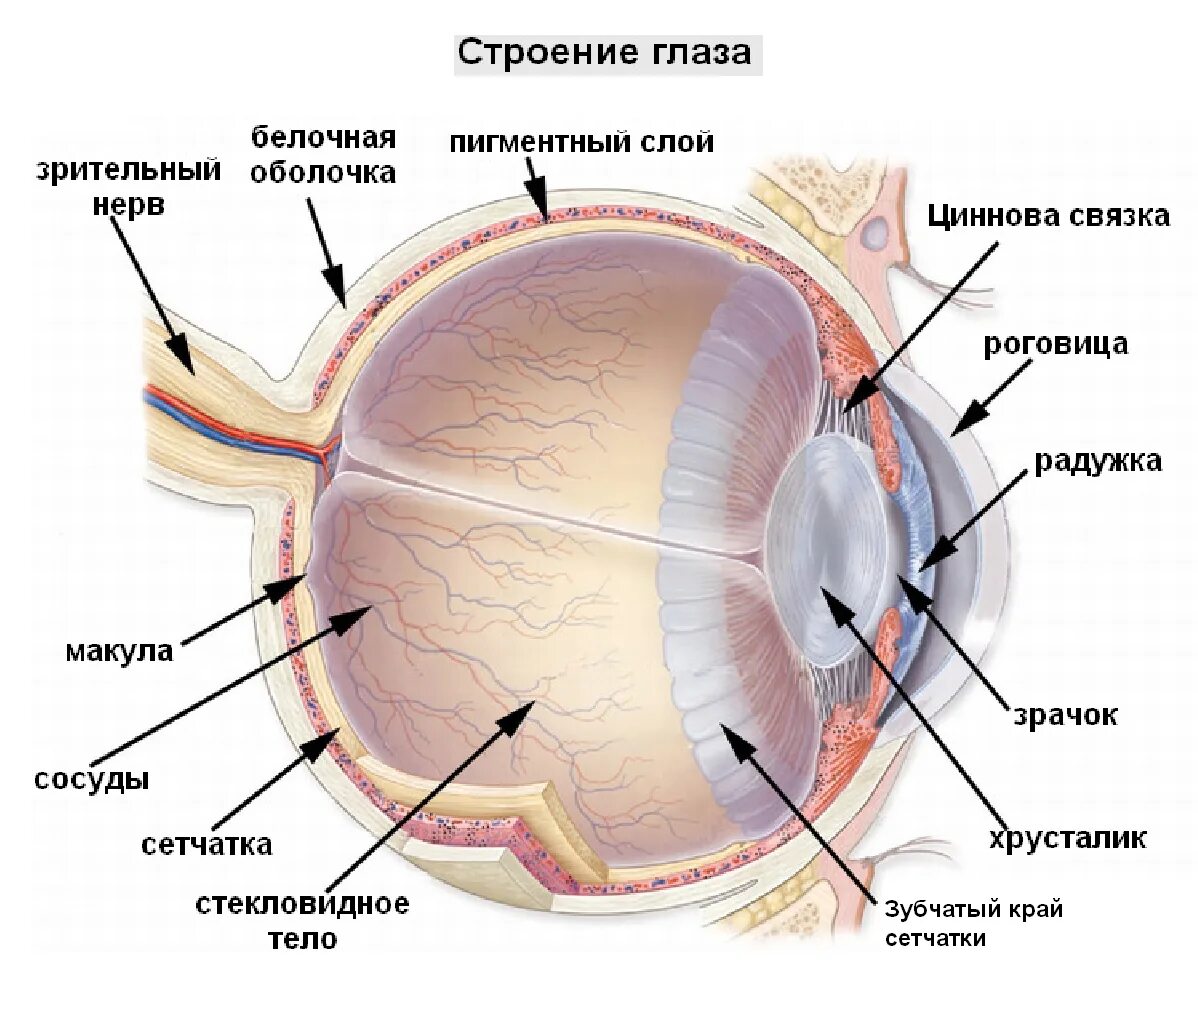 Белочная оболочка глаза человека. Сетчатка оболочка глаза. Строение глаза послойно. Строение глазного яблока и сетчатки. Структура глазного яблока схема.